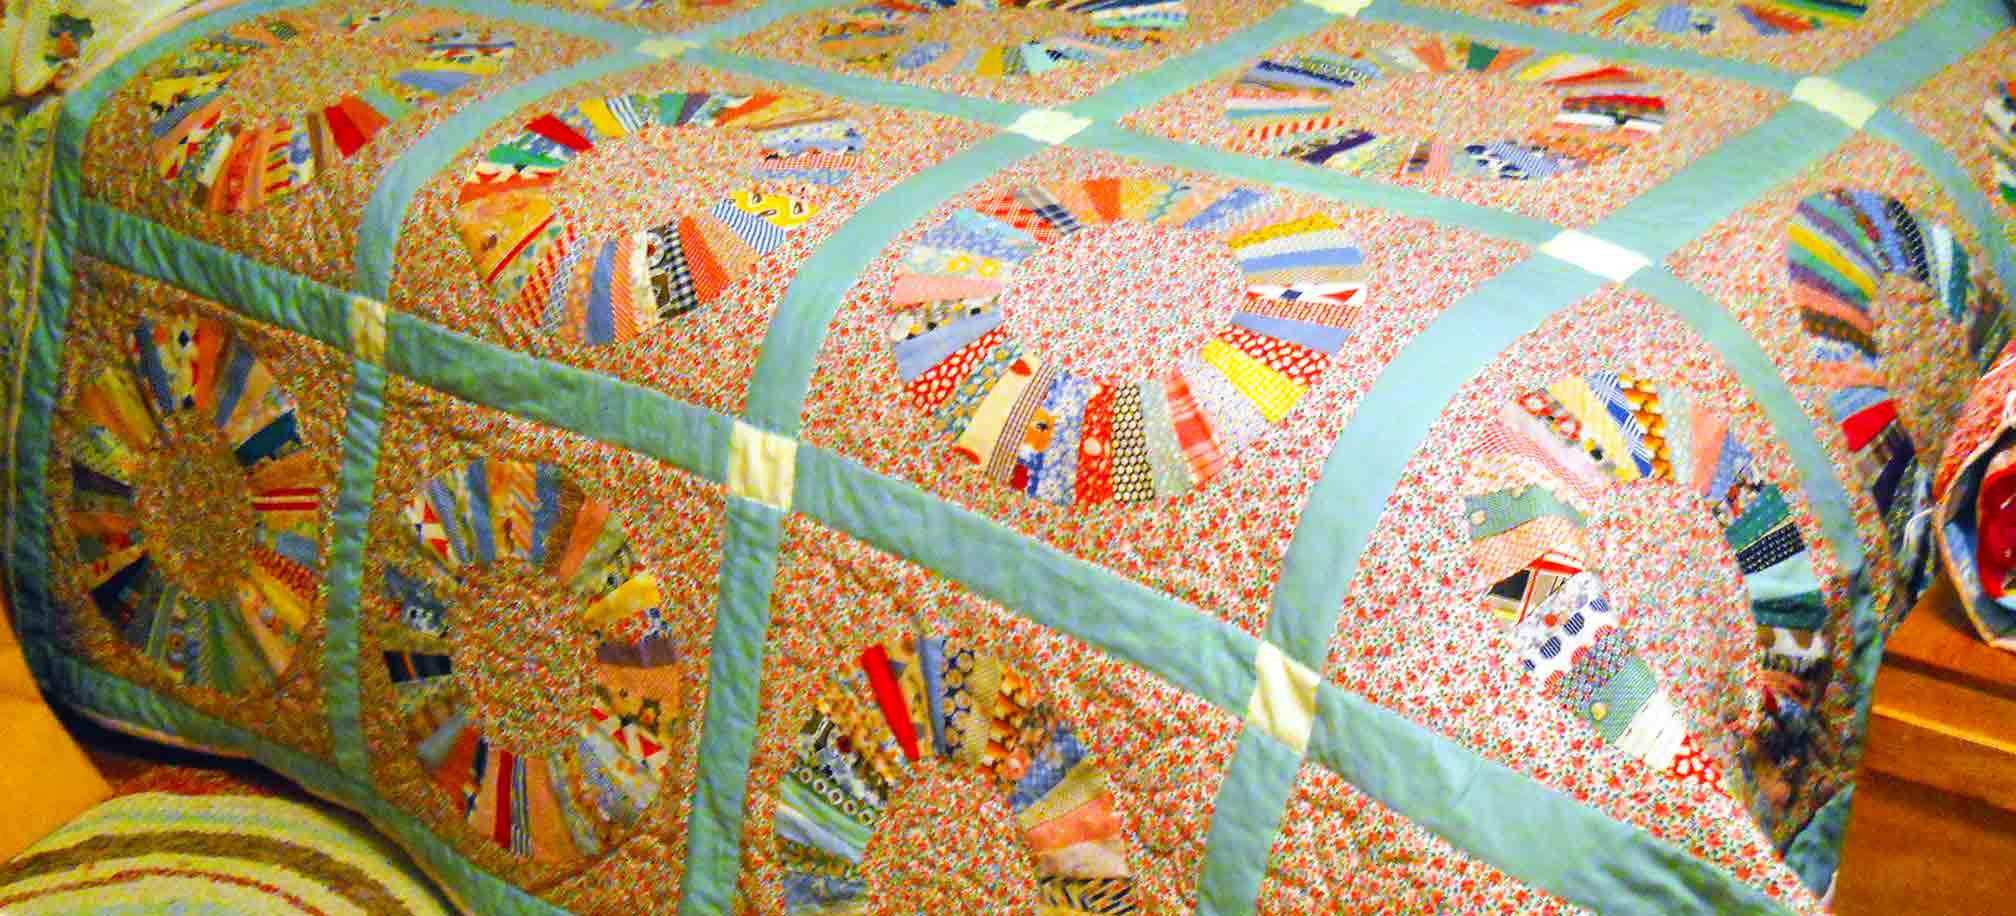 Dresden quilt begun 1915 completed in 2012